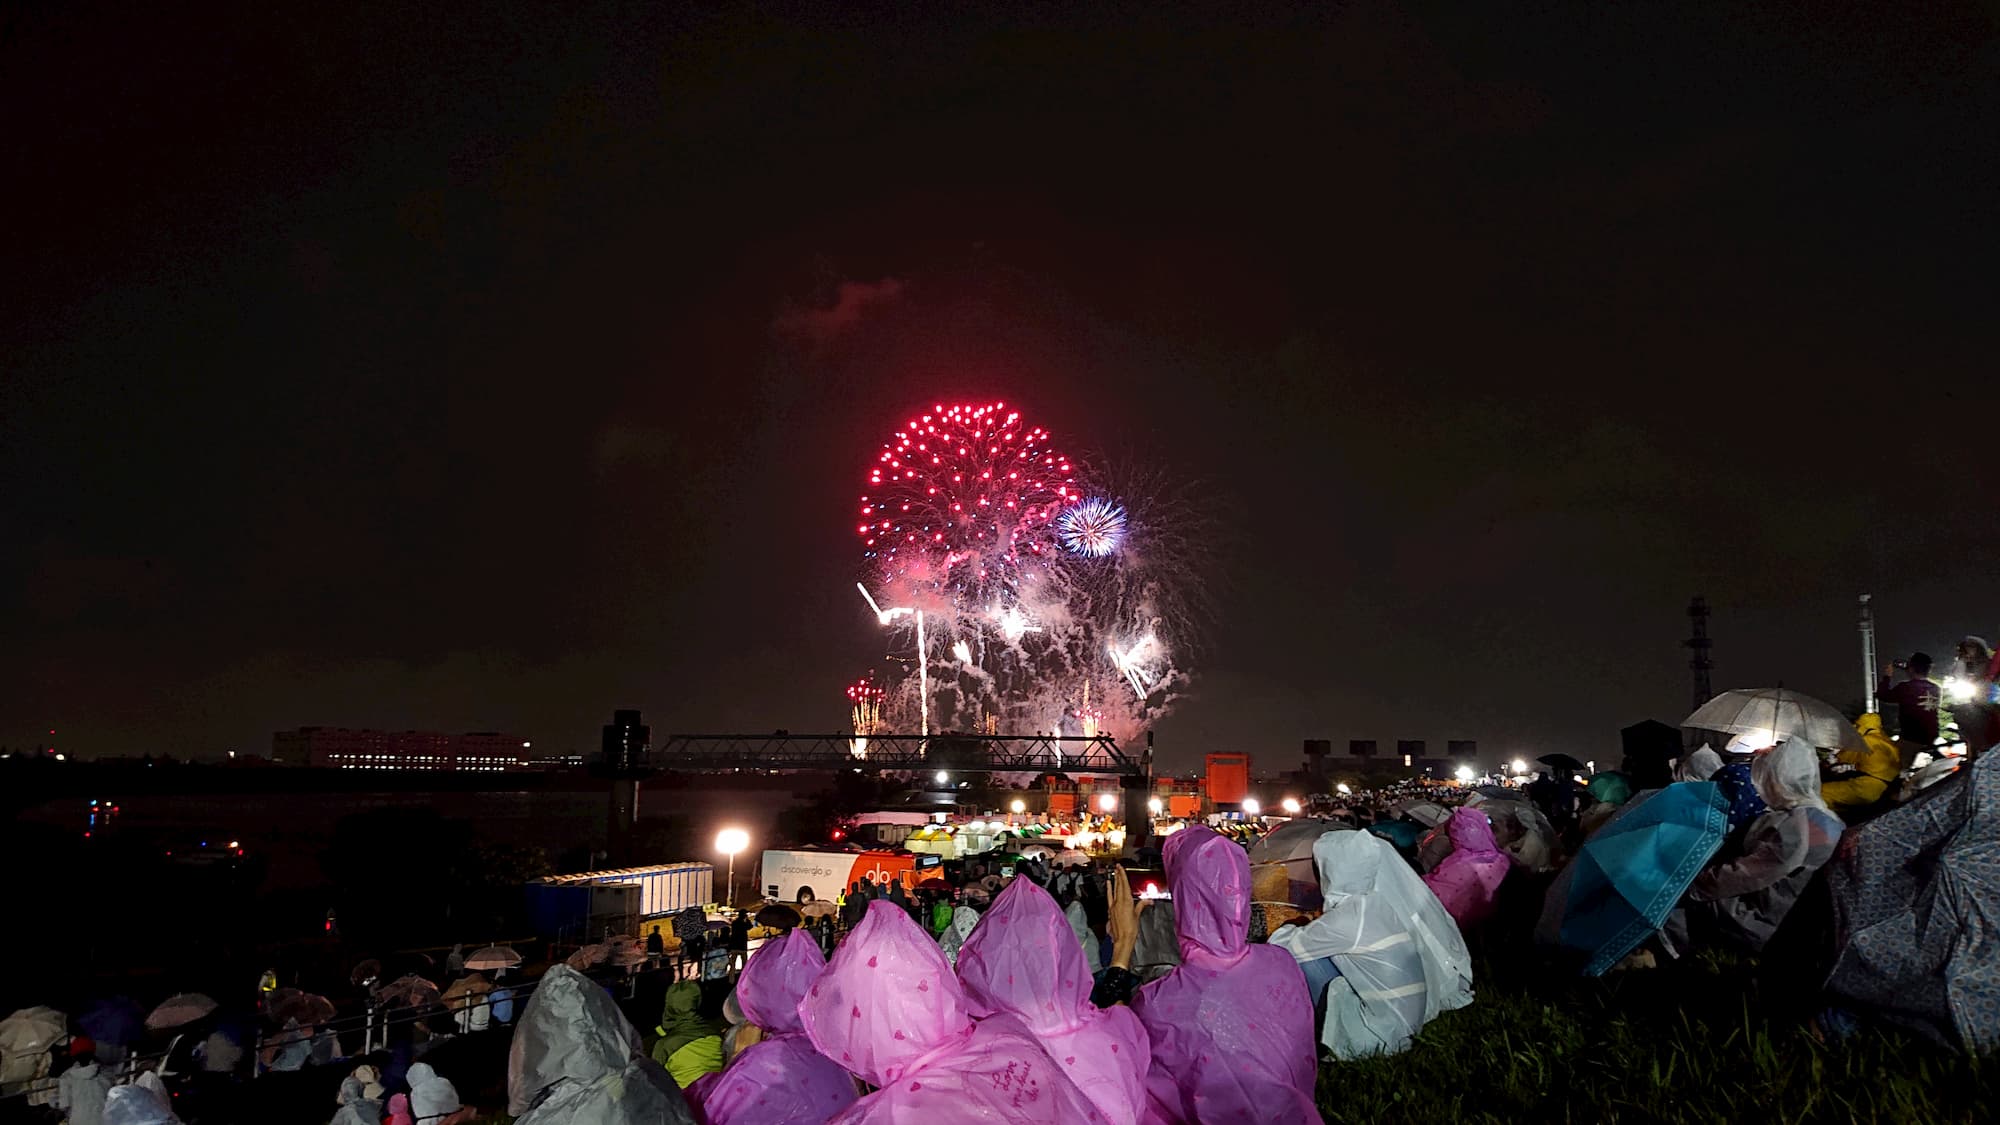 รีวิวทริปโตเกียวต้นตุลาฯ 2018 EP 2: ขึ้นเครื่อง เข้าเมือง เช็คอิน แล้วออกไปดูดอกไม้ไฟท้ายฤดูกาล